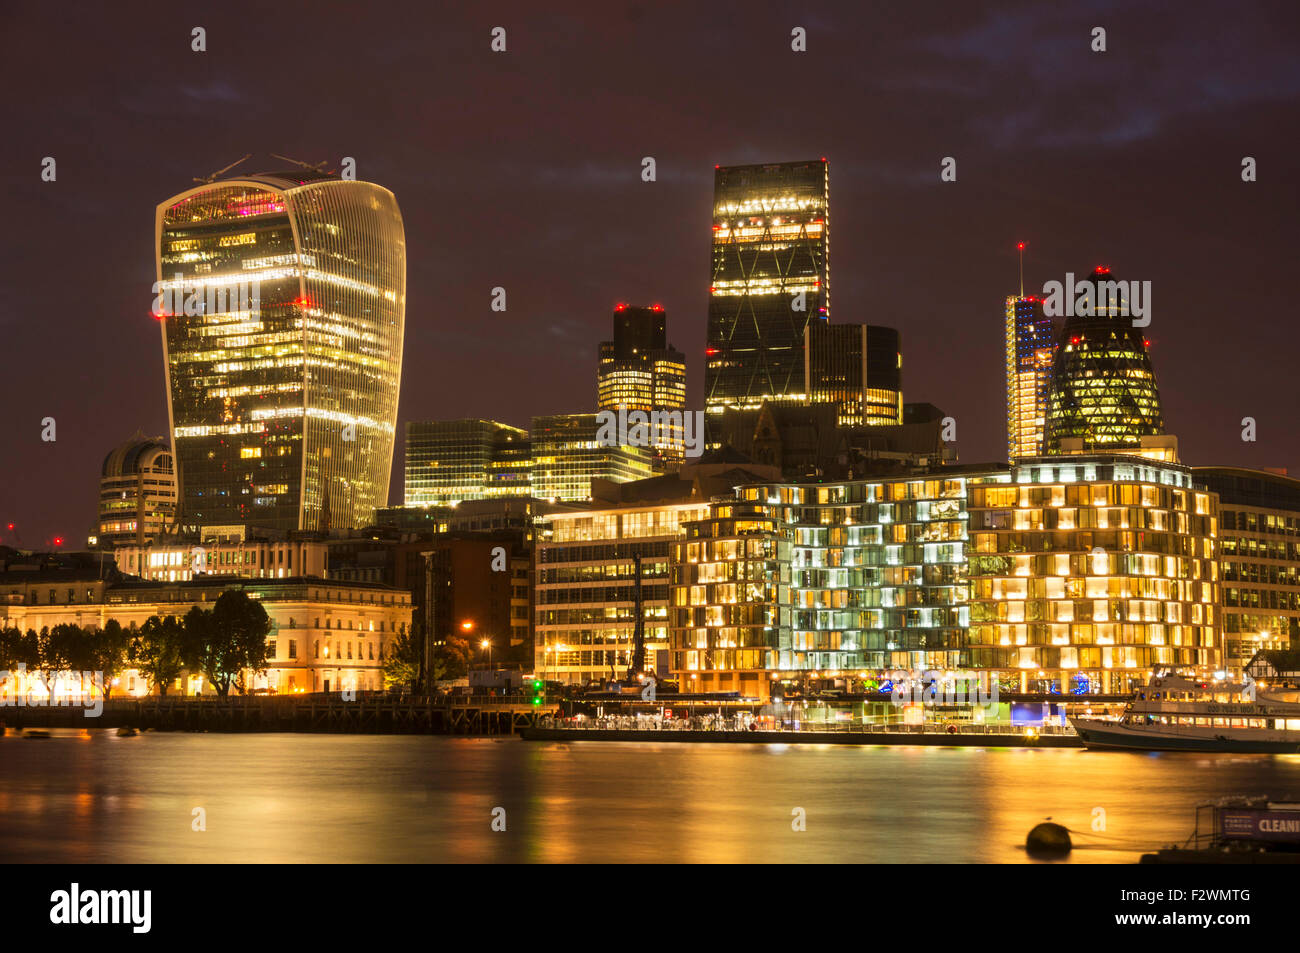 Der Londoner Skyline Finanzviertel beleuchtet in der Nacht River Thames Stadt London UK GB EU Europas Stockfoto